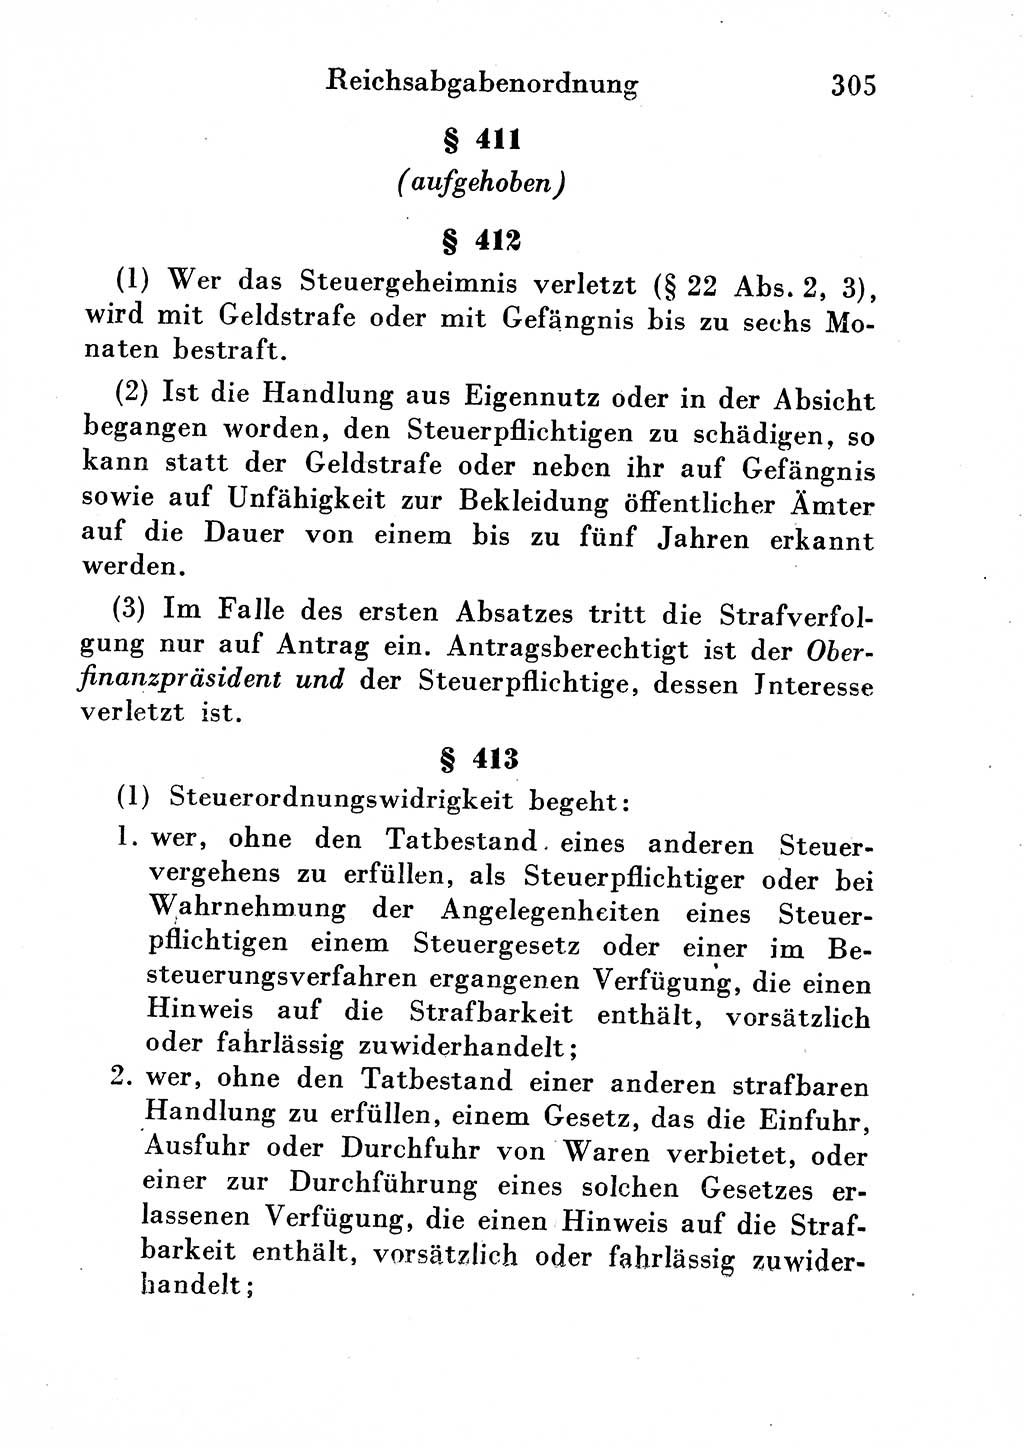 Strafgesetzbuch (StGB) und andere Strafgesetze [Deutsche Demokratische Republik (DDR)] 1954, Seite 305 (StGB Strafges. DDR 1954, S. 305)